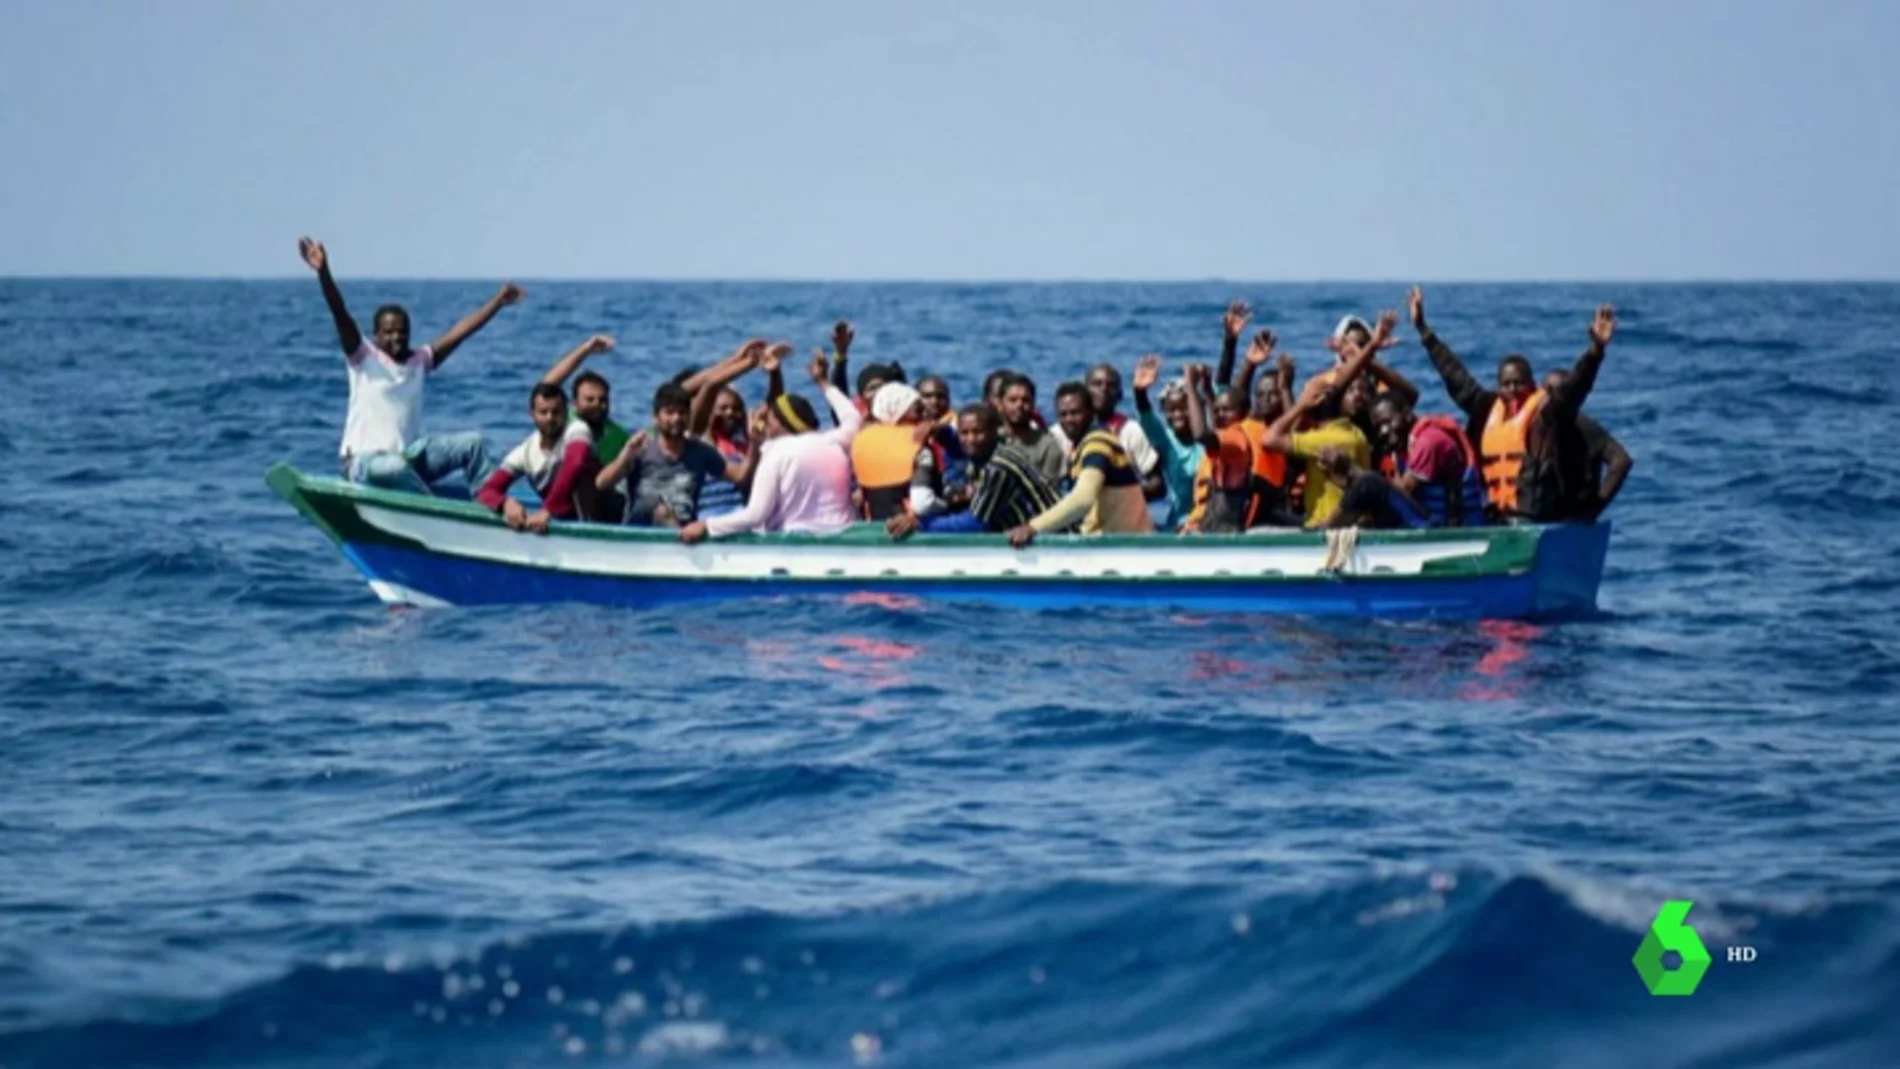 25 migrantes rescatados por el Aquarius